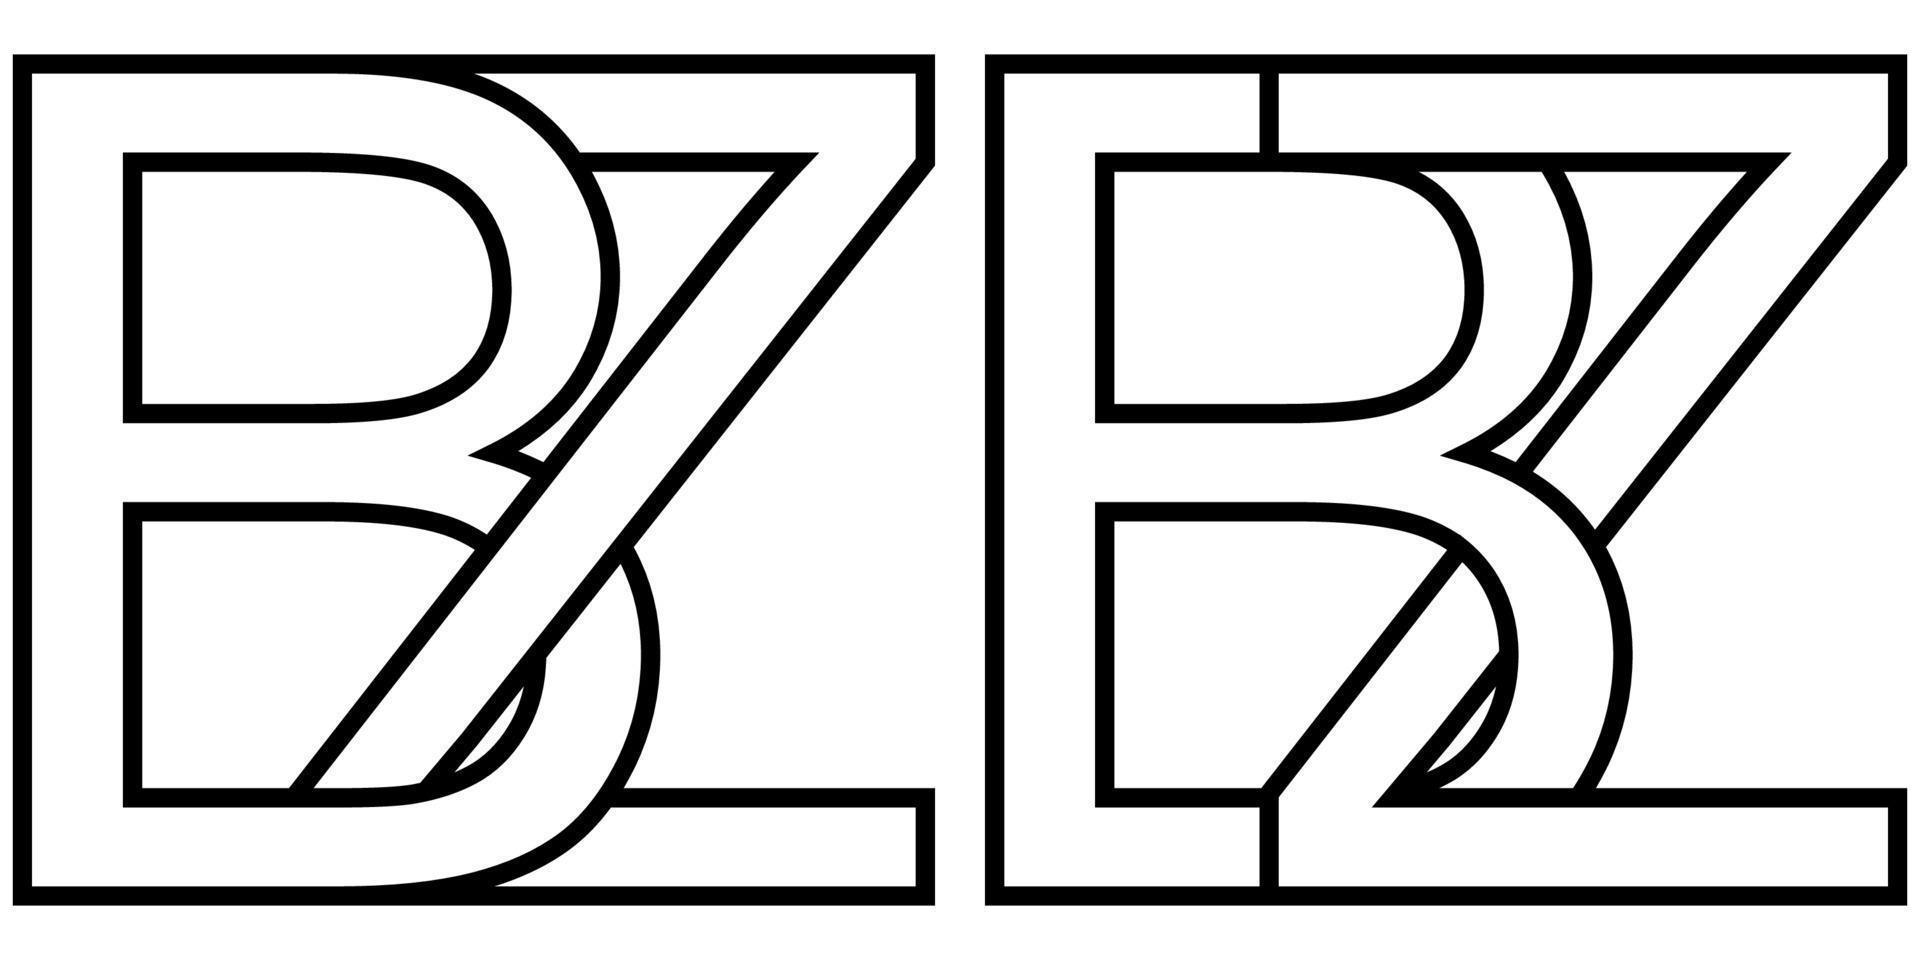 logo firmar bz zb icono firmar dos entrelazado letras b, z vector logo bz, zb primero capital letras modelo alfabeto b, z